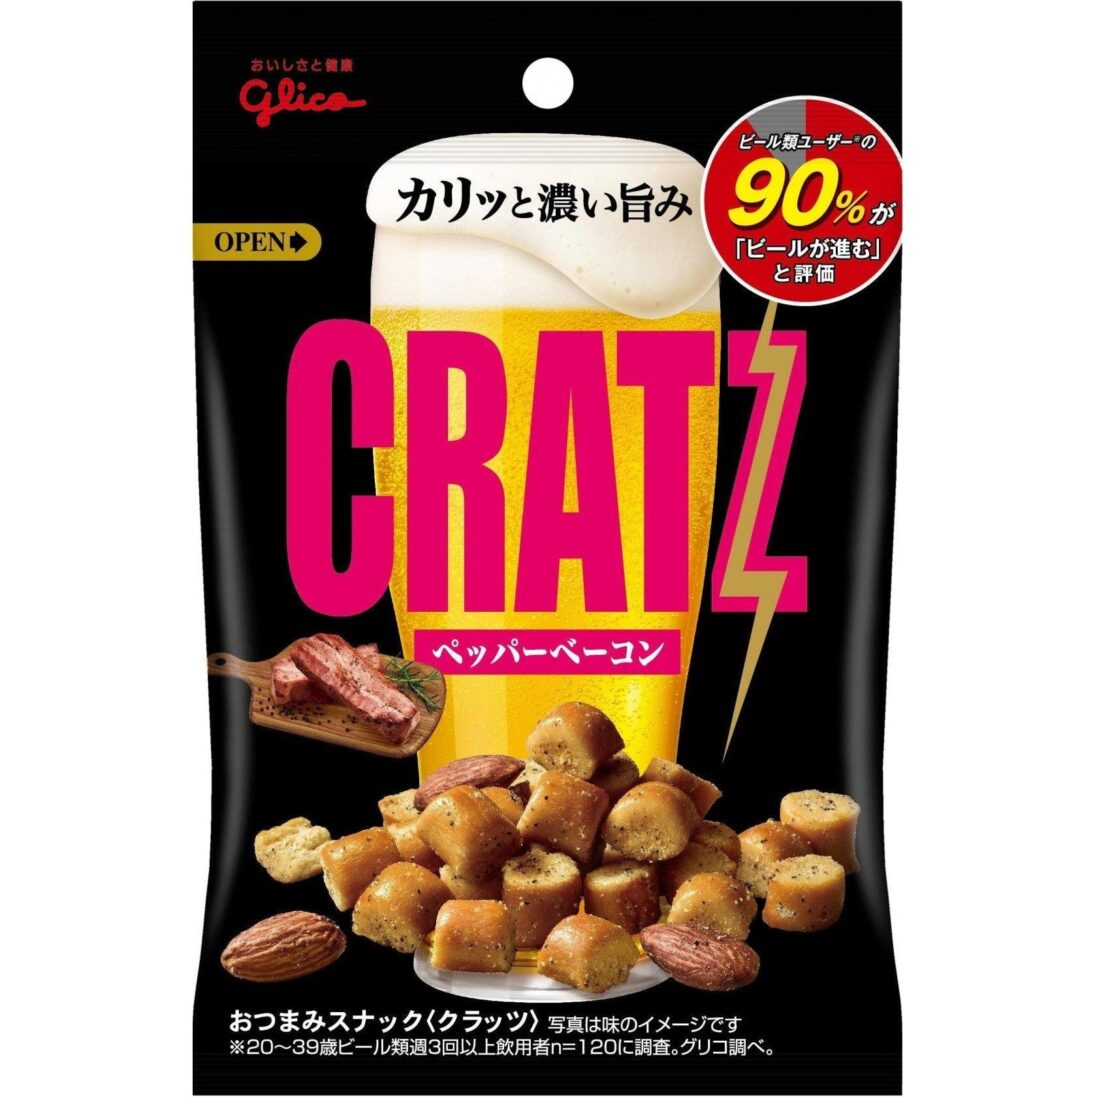 Glico Cratz Pepper Bacon Snack 42g